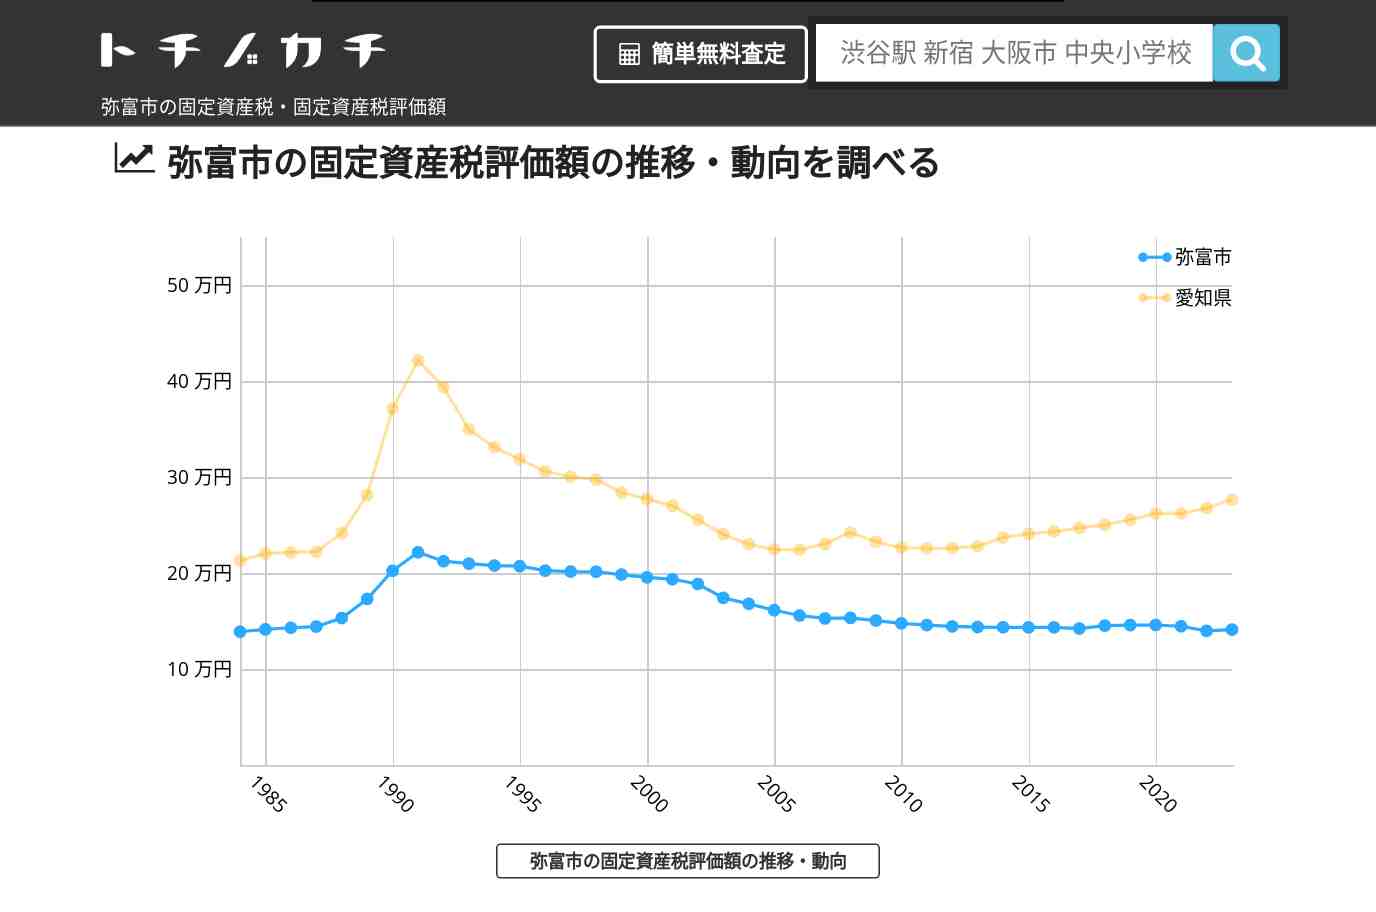 十四山中学校(愛知県 弥富市)周辺の固定資産税・固定資産税評価額 | トチノカチ